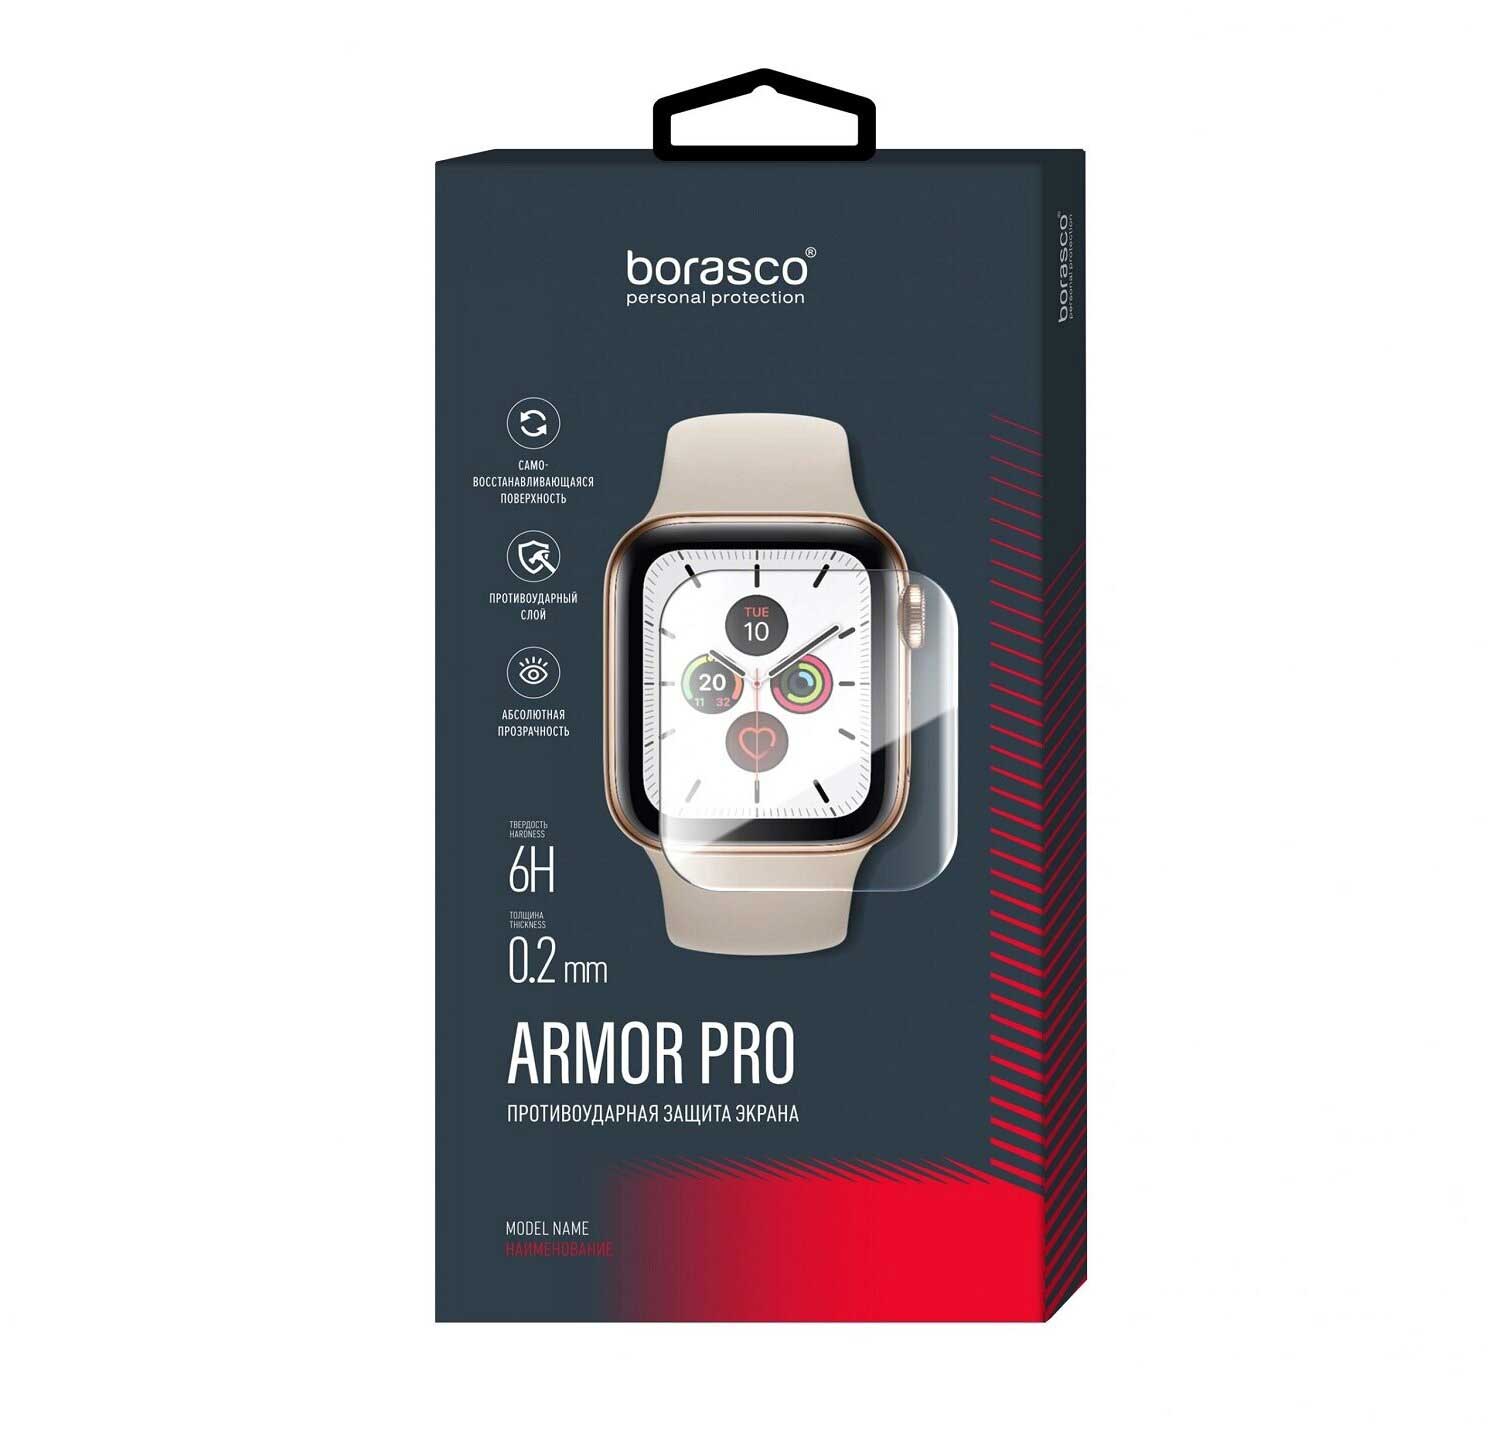 Защита экрана BoraSCO Armor Pro для Aimoto Pro Life защита экрана borasco armor pro для amazfit bip